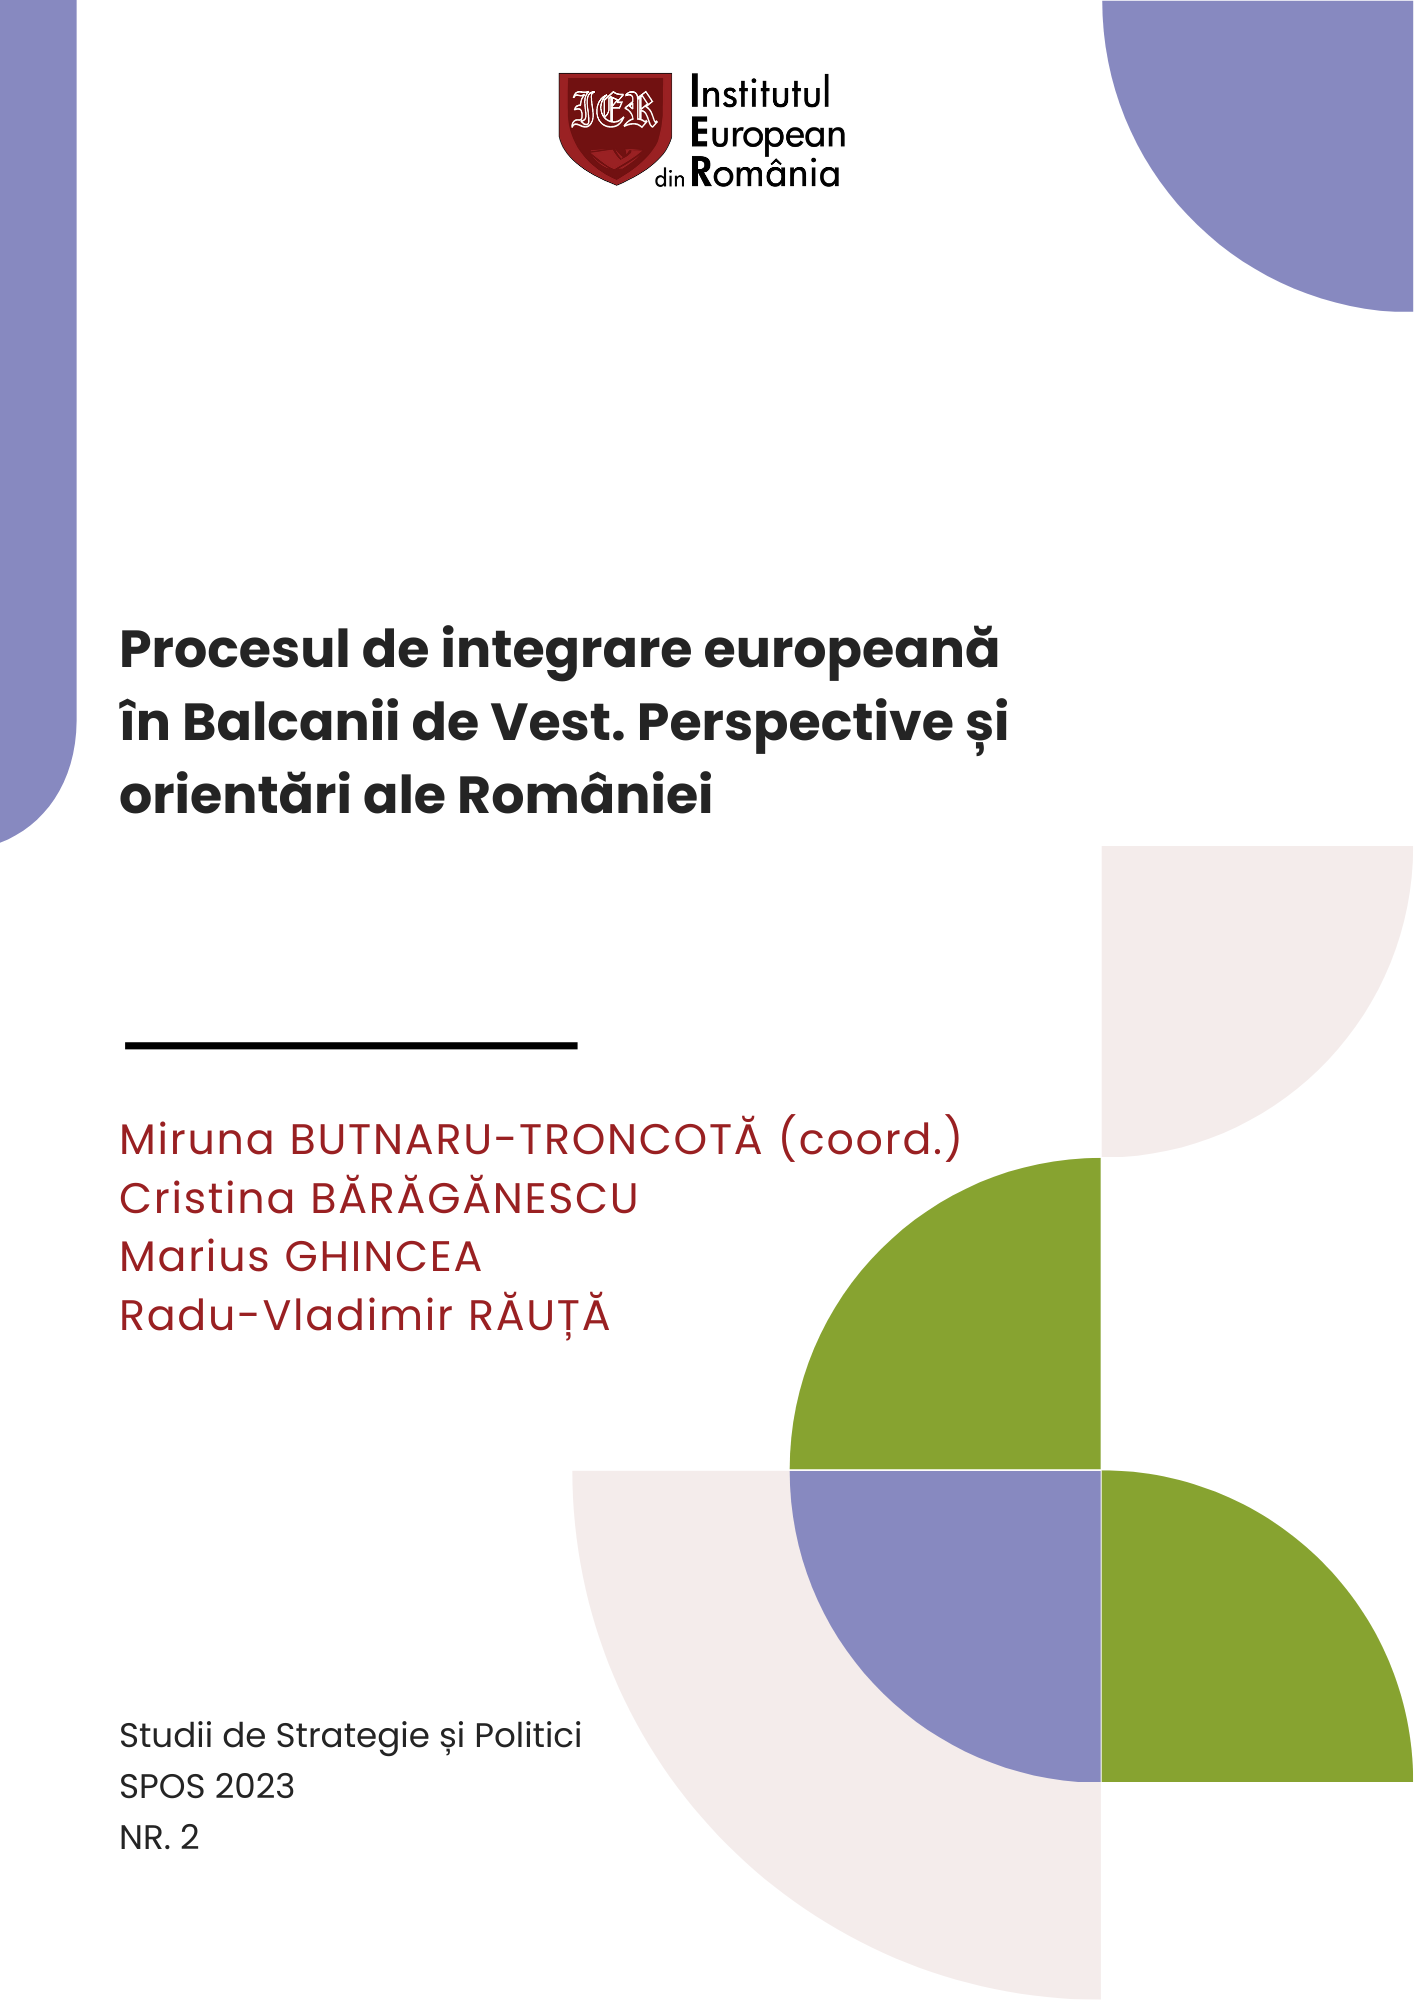 SPOS 2023 – Procesul de integrare europeană în Balcanii de Vest. Perspective și orientări ale României